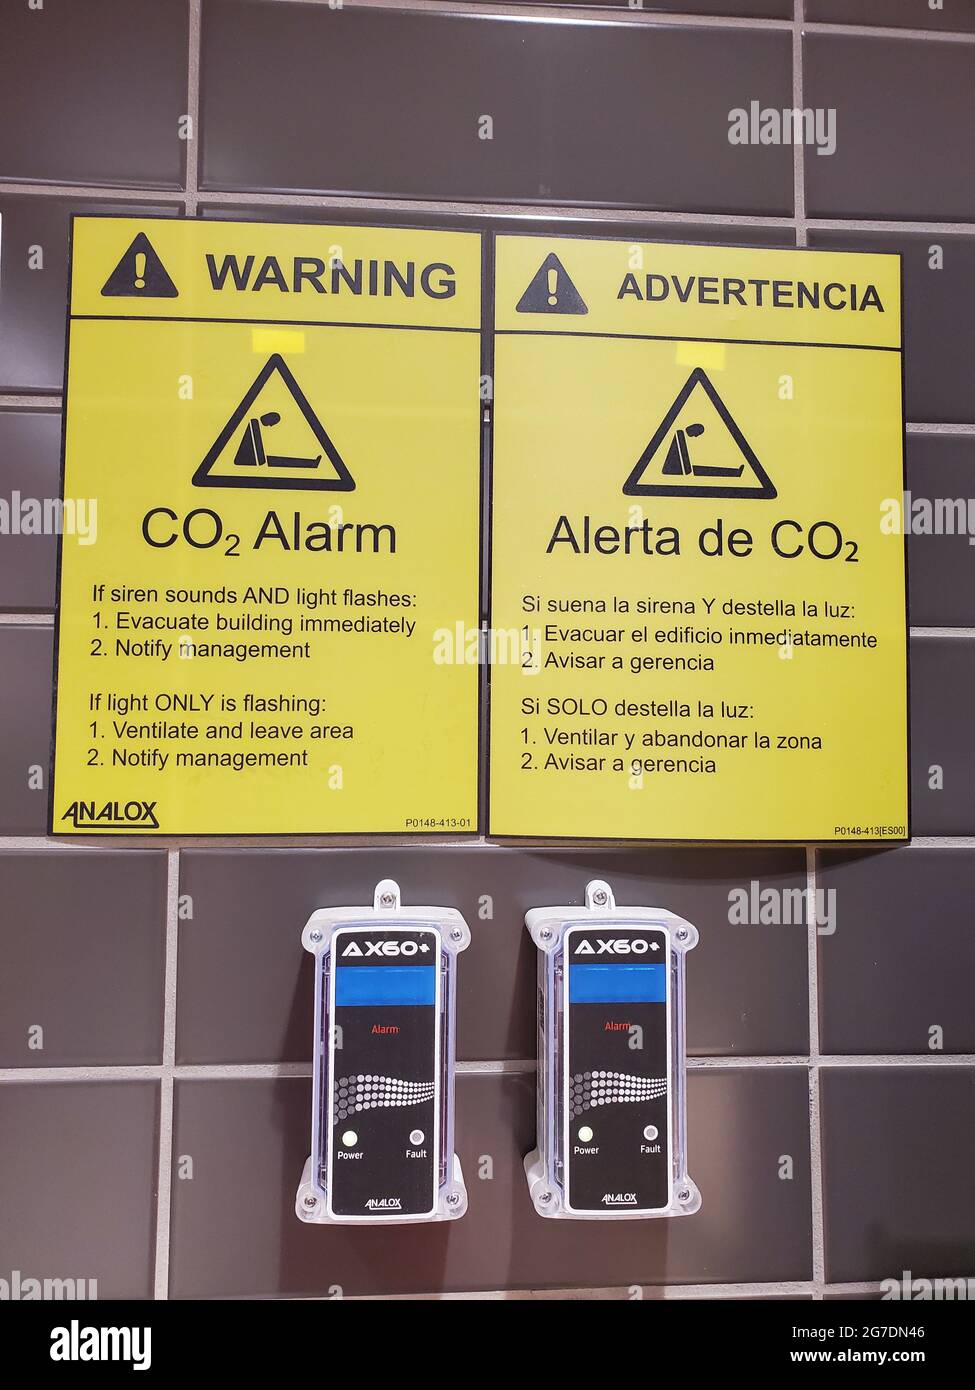 Primer plano de dos alarmas de dióxido de carbono Analox montadas en la pared con avisos de seguridad en español e inglés, fotografiadas en Walnut Creek, California, 2 de abril de 2021. () Foto de stock